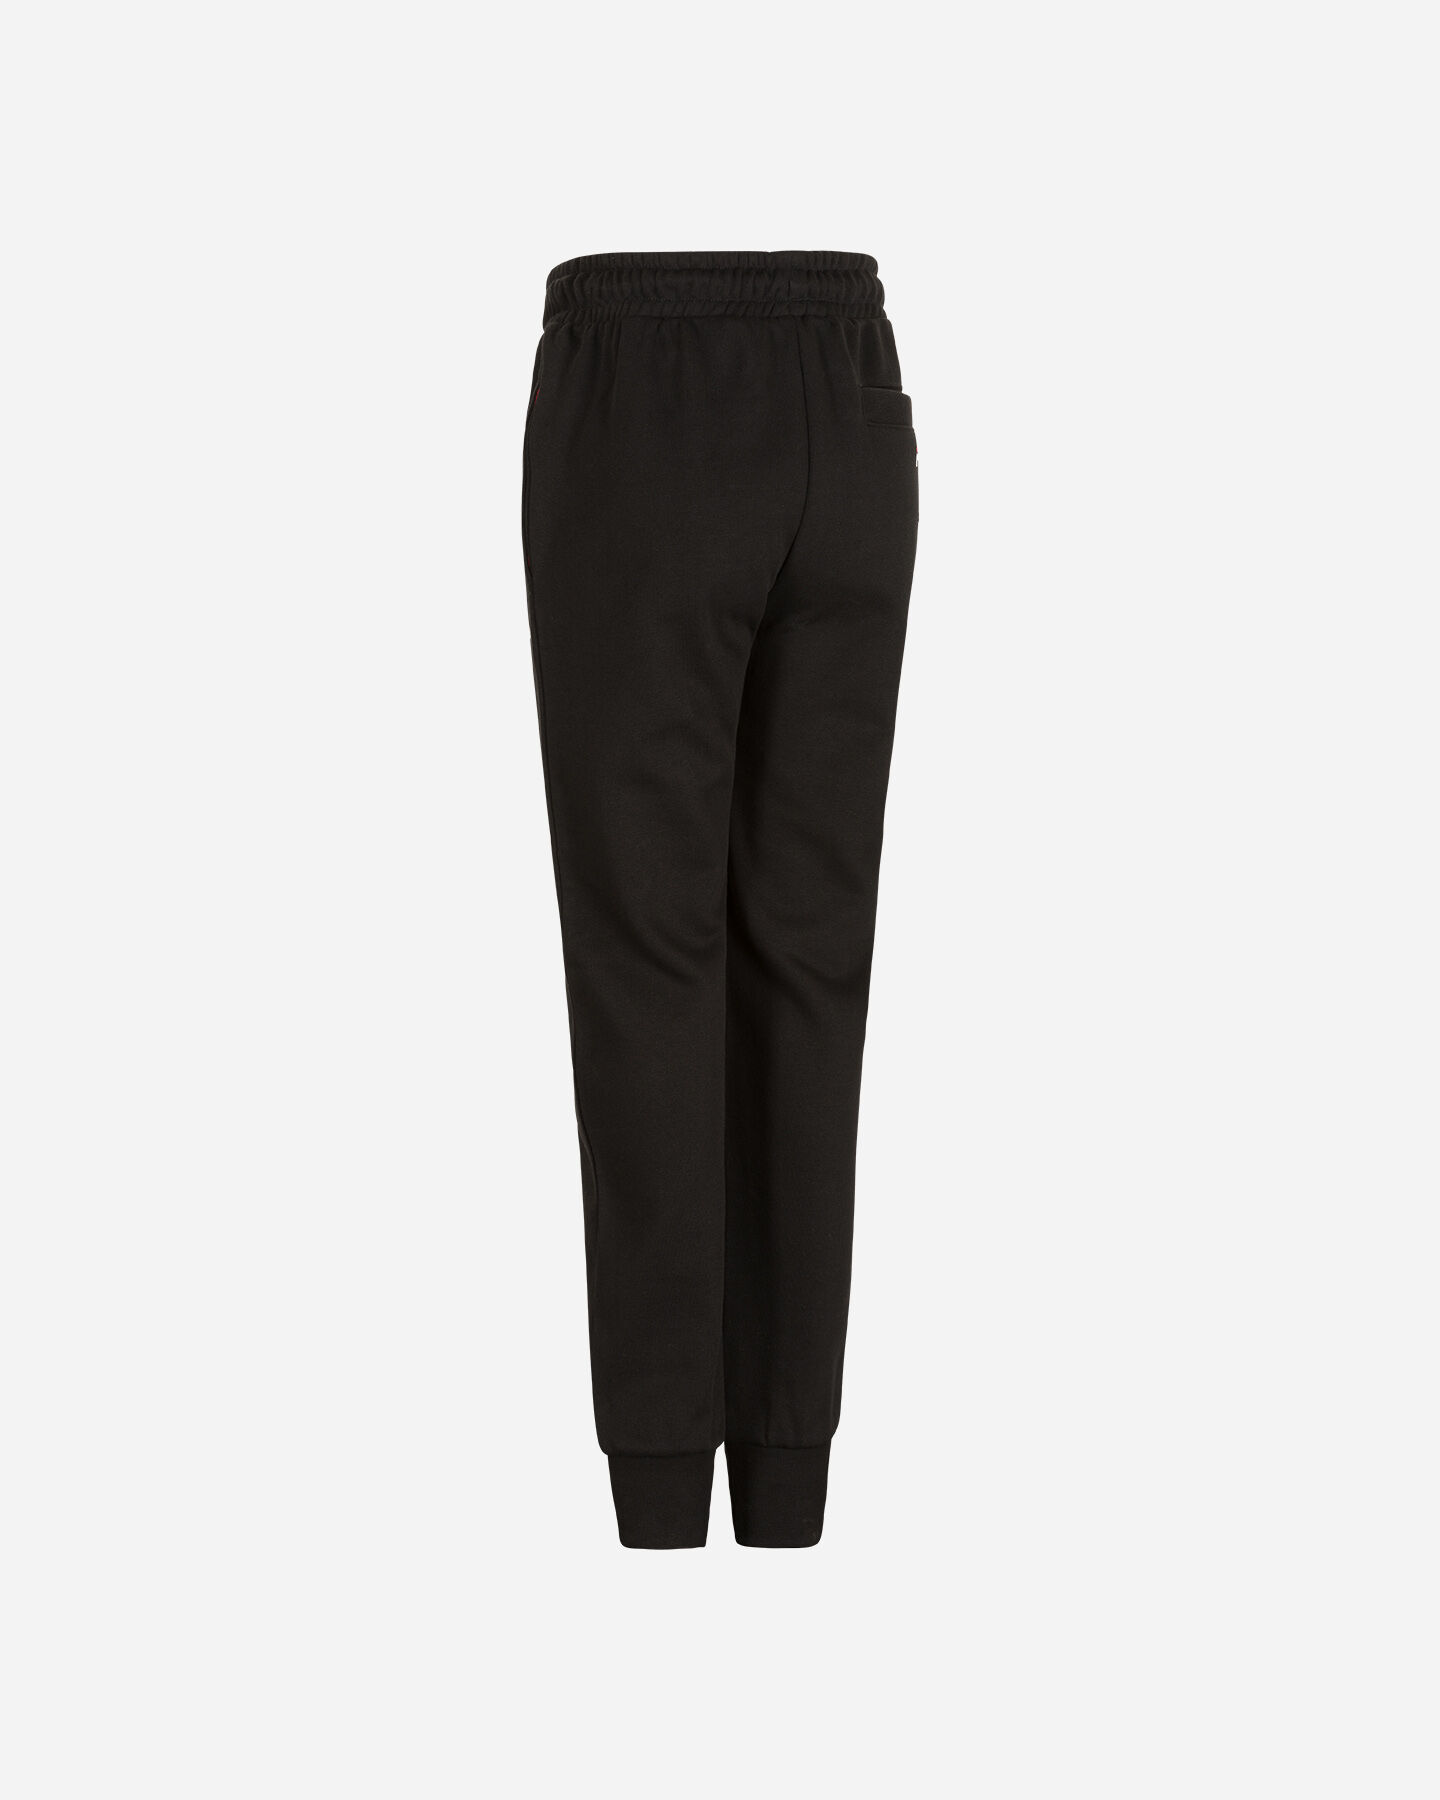  Pantalone FILA SMALL LOGO JR S4088601|050|12A scatto 1